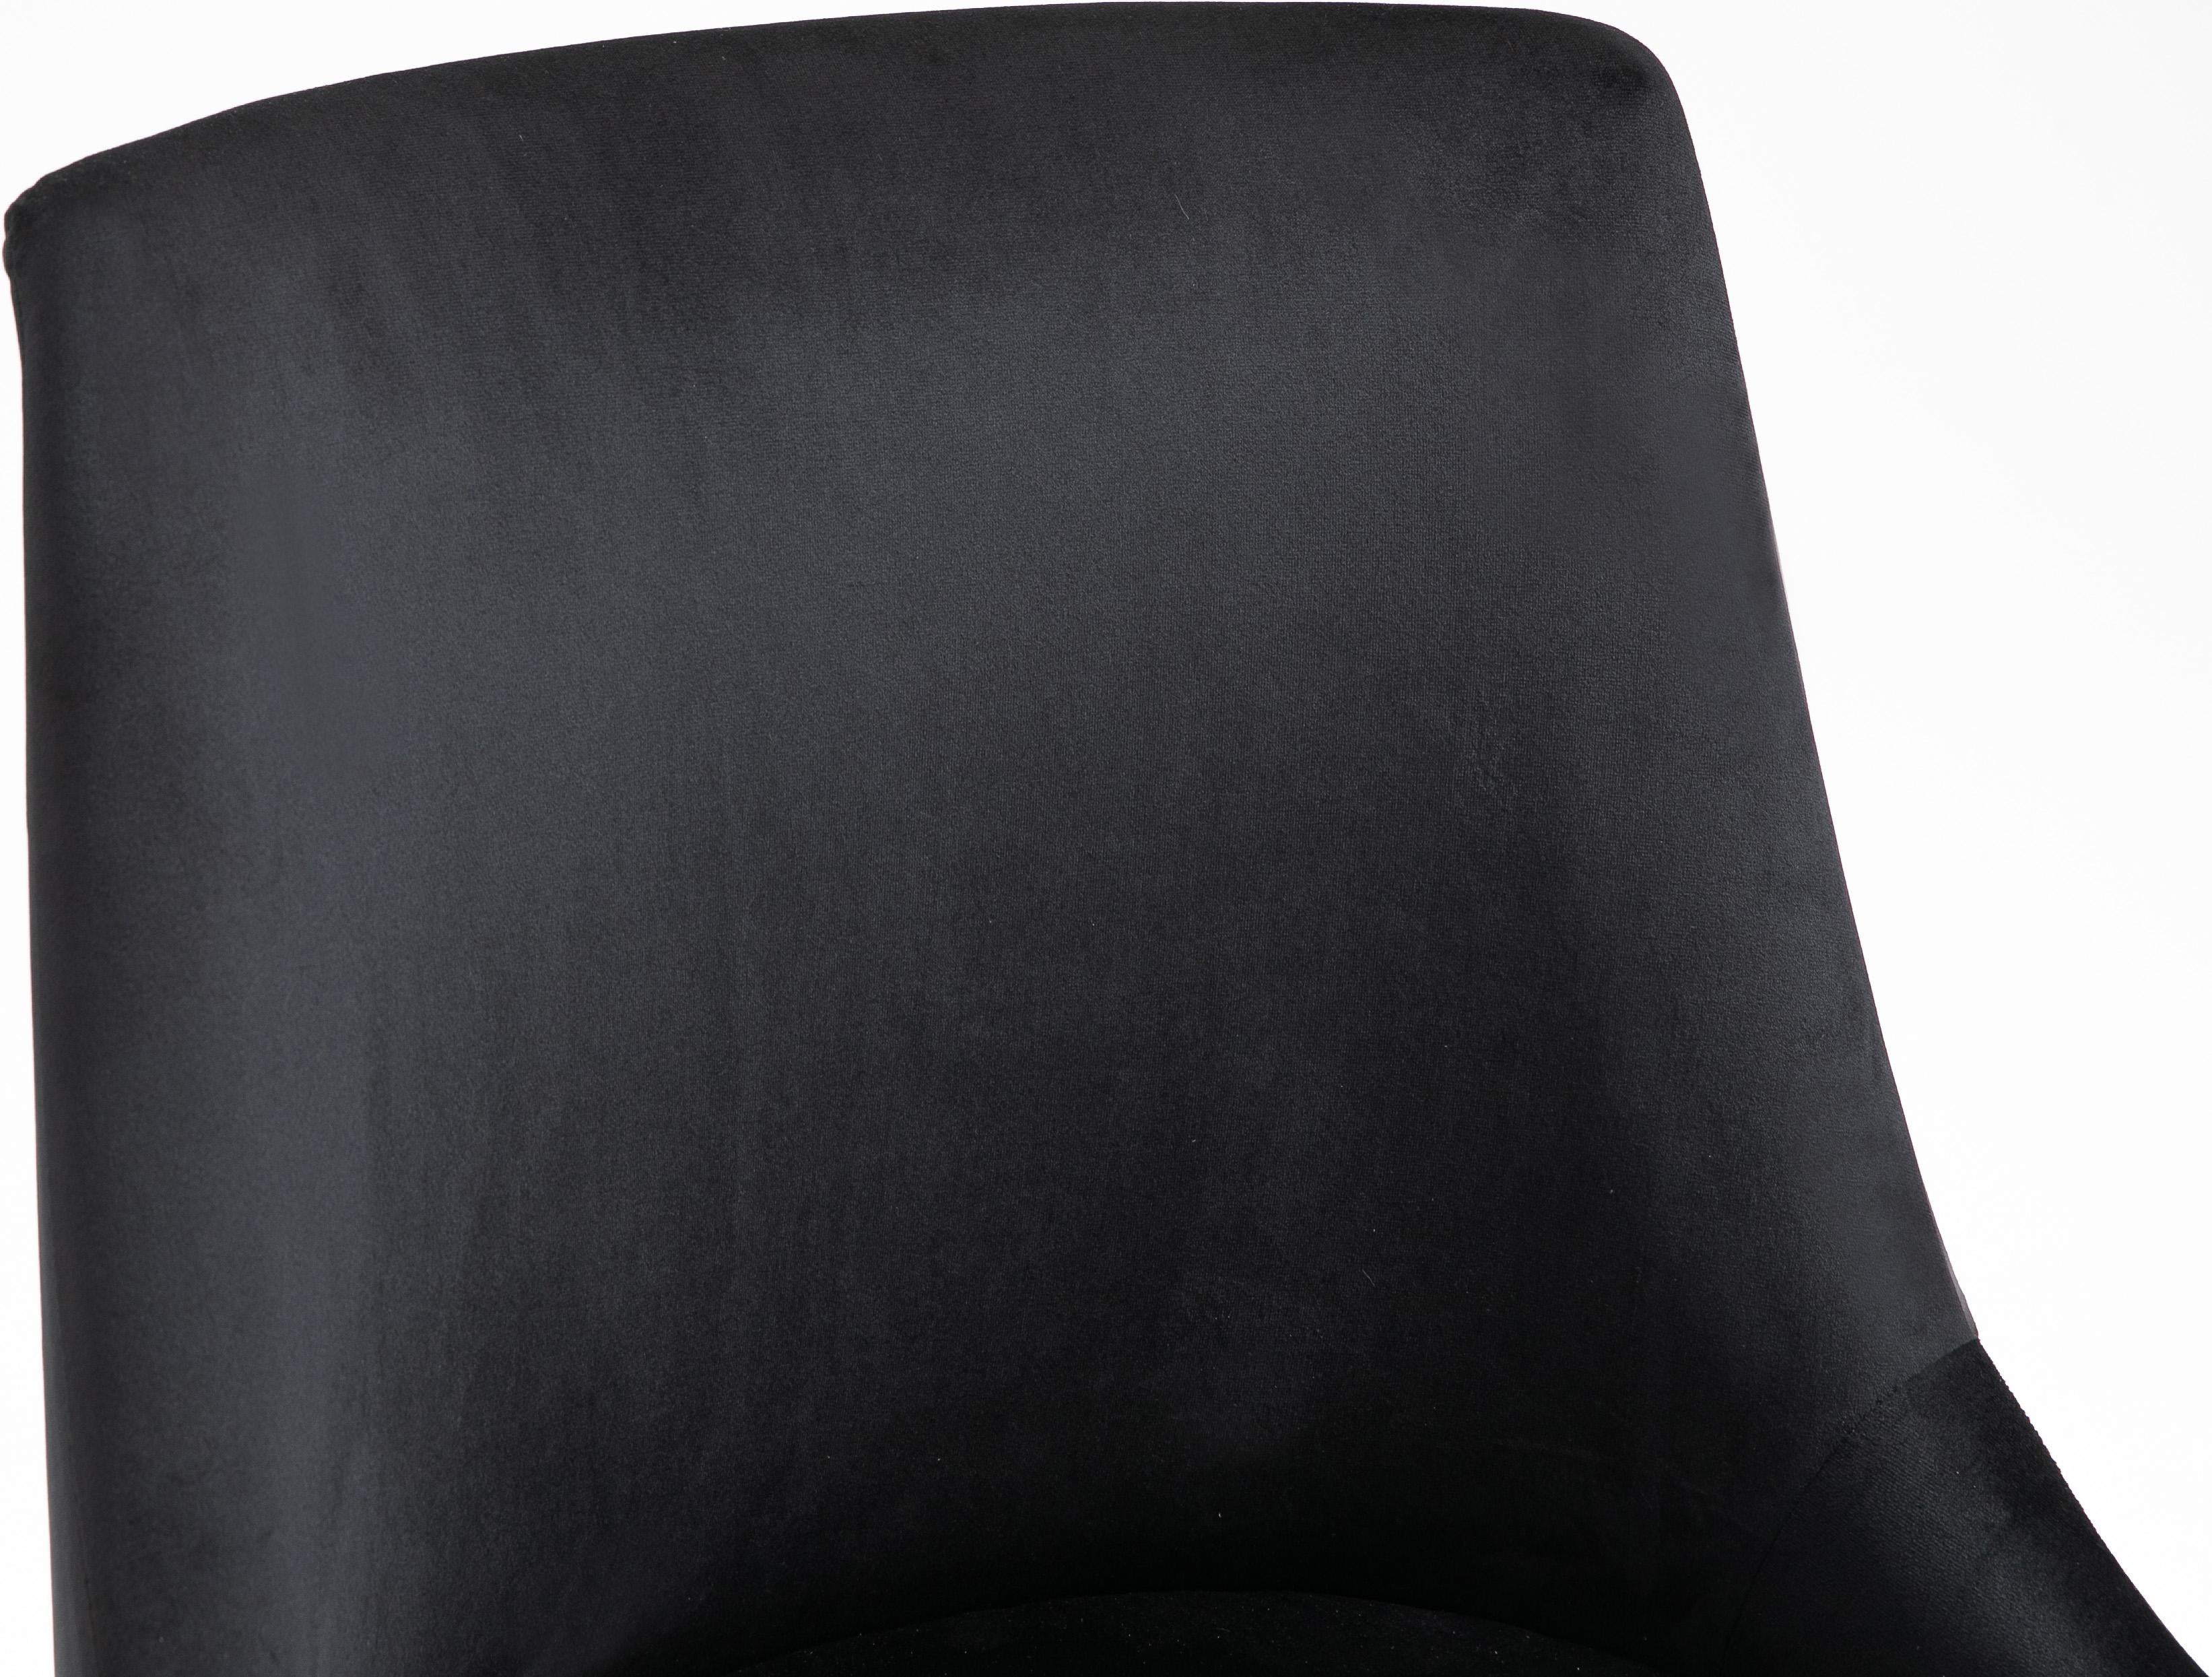 Karina Black Velvet Office Chair - Luxury Home Furniture (MI)